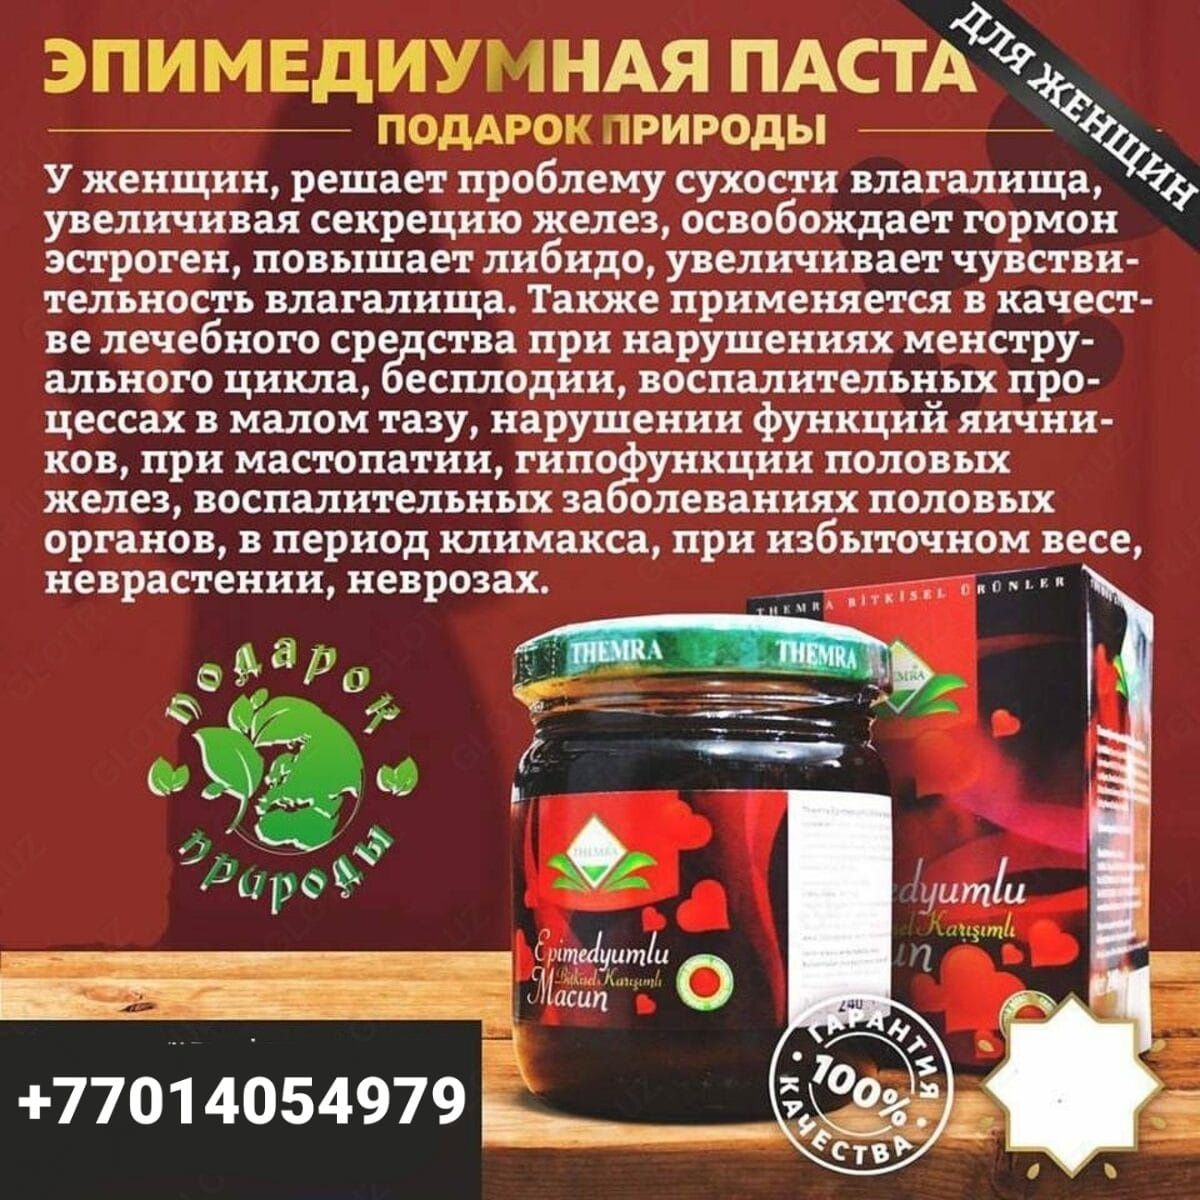 Натуральный мёд THEMRA (Турция). Для взрослых